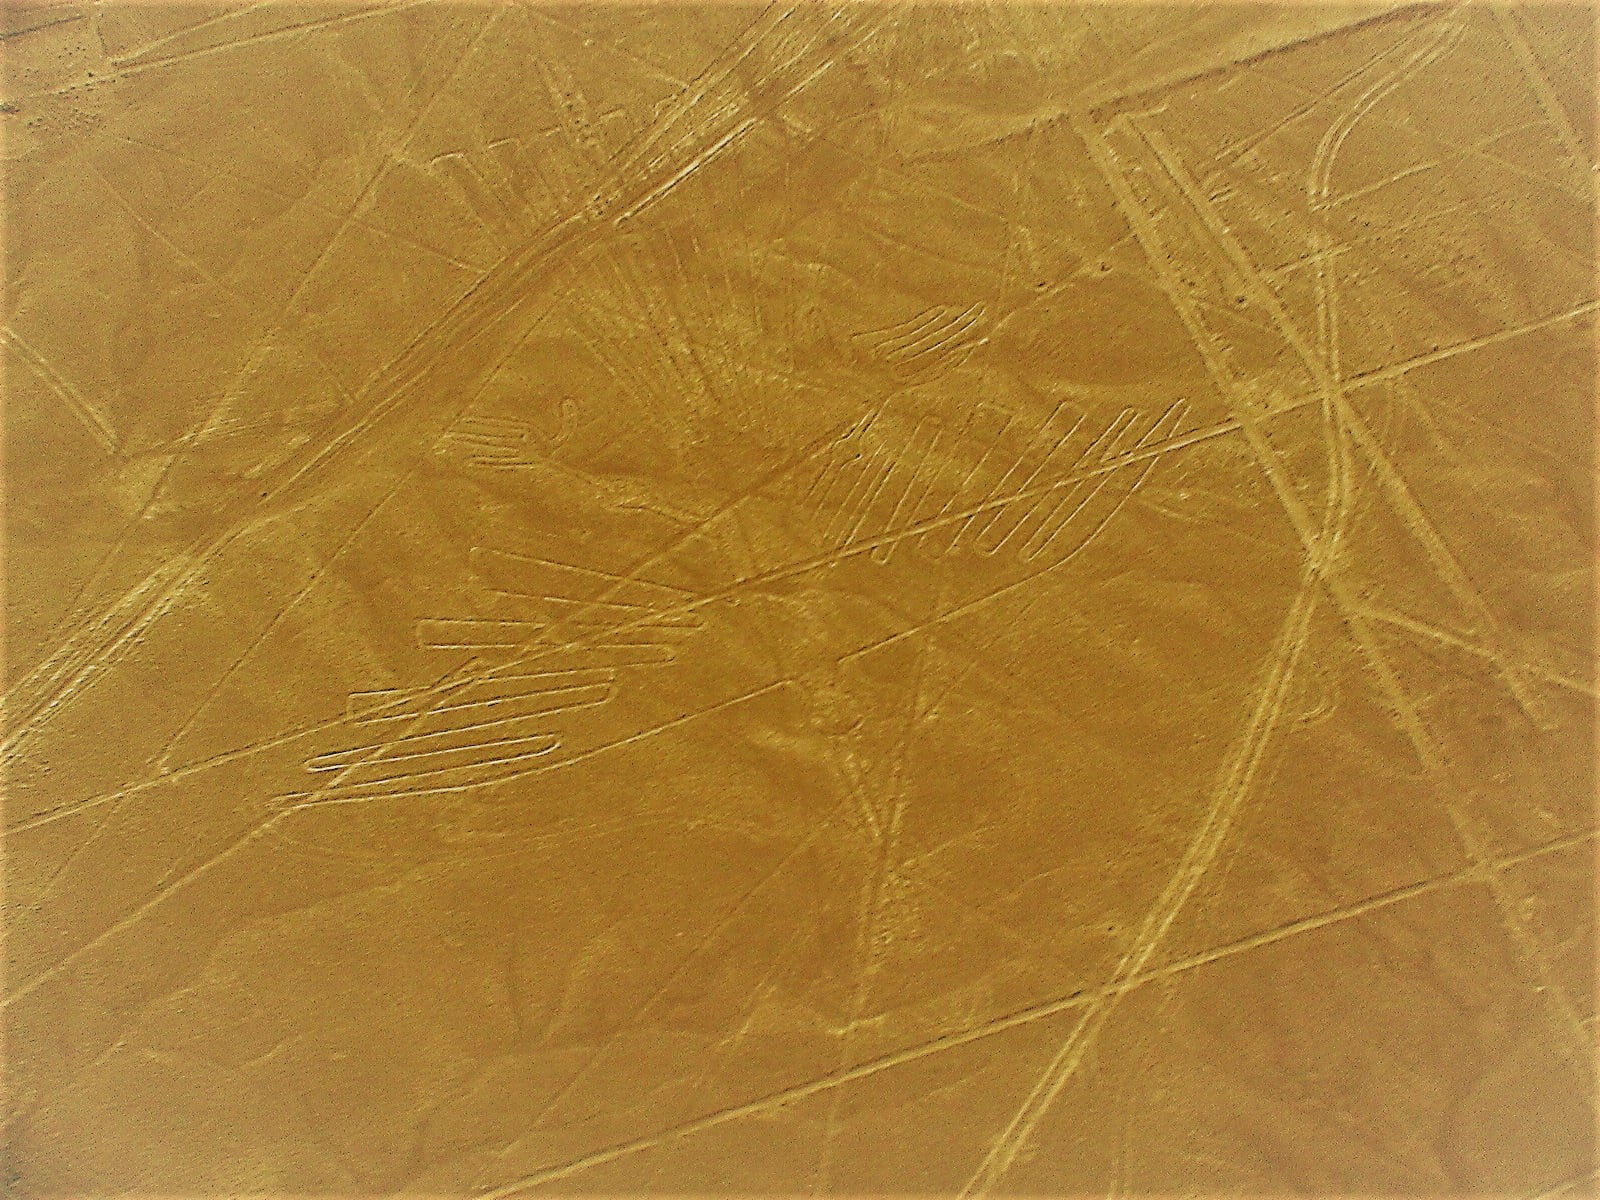 Condor - petroglifos nas linhas de Nazca. Foto: Ana Arantes